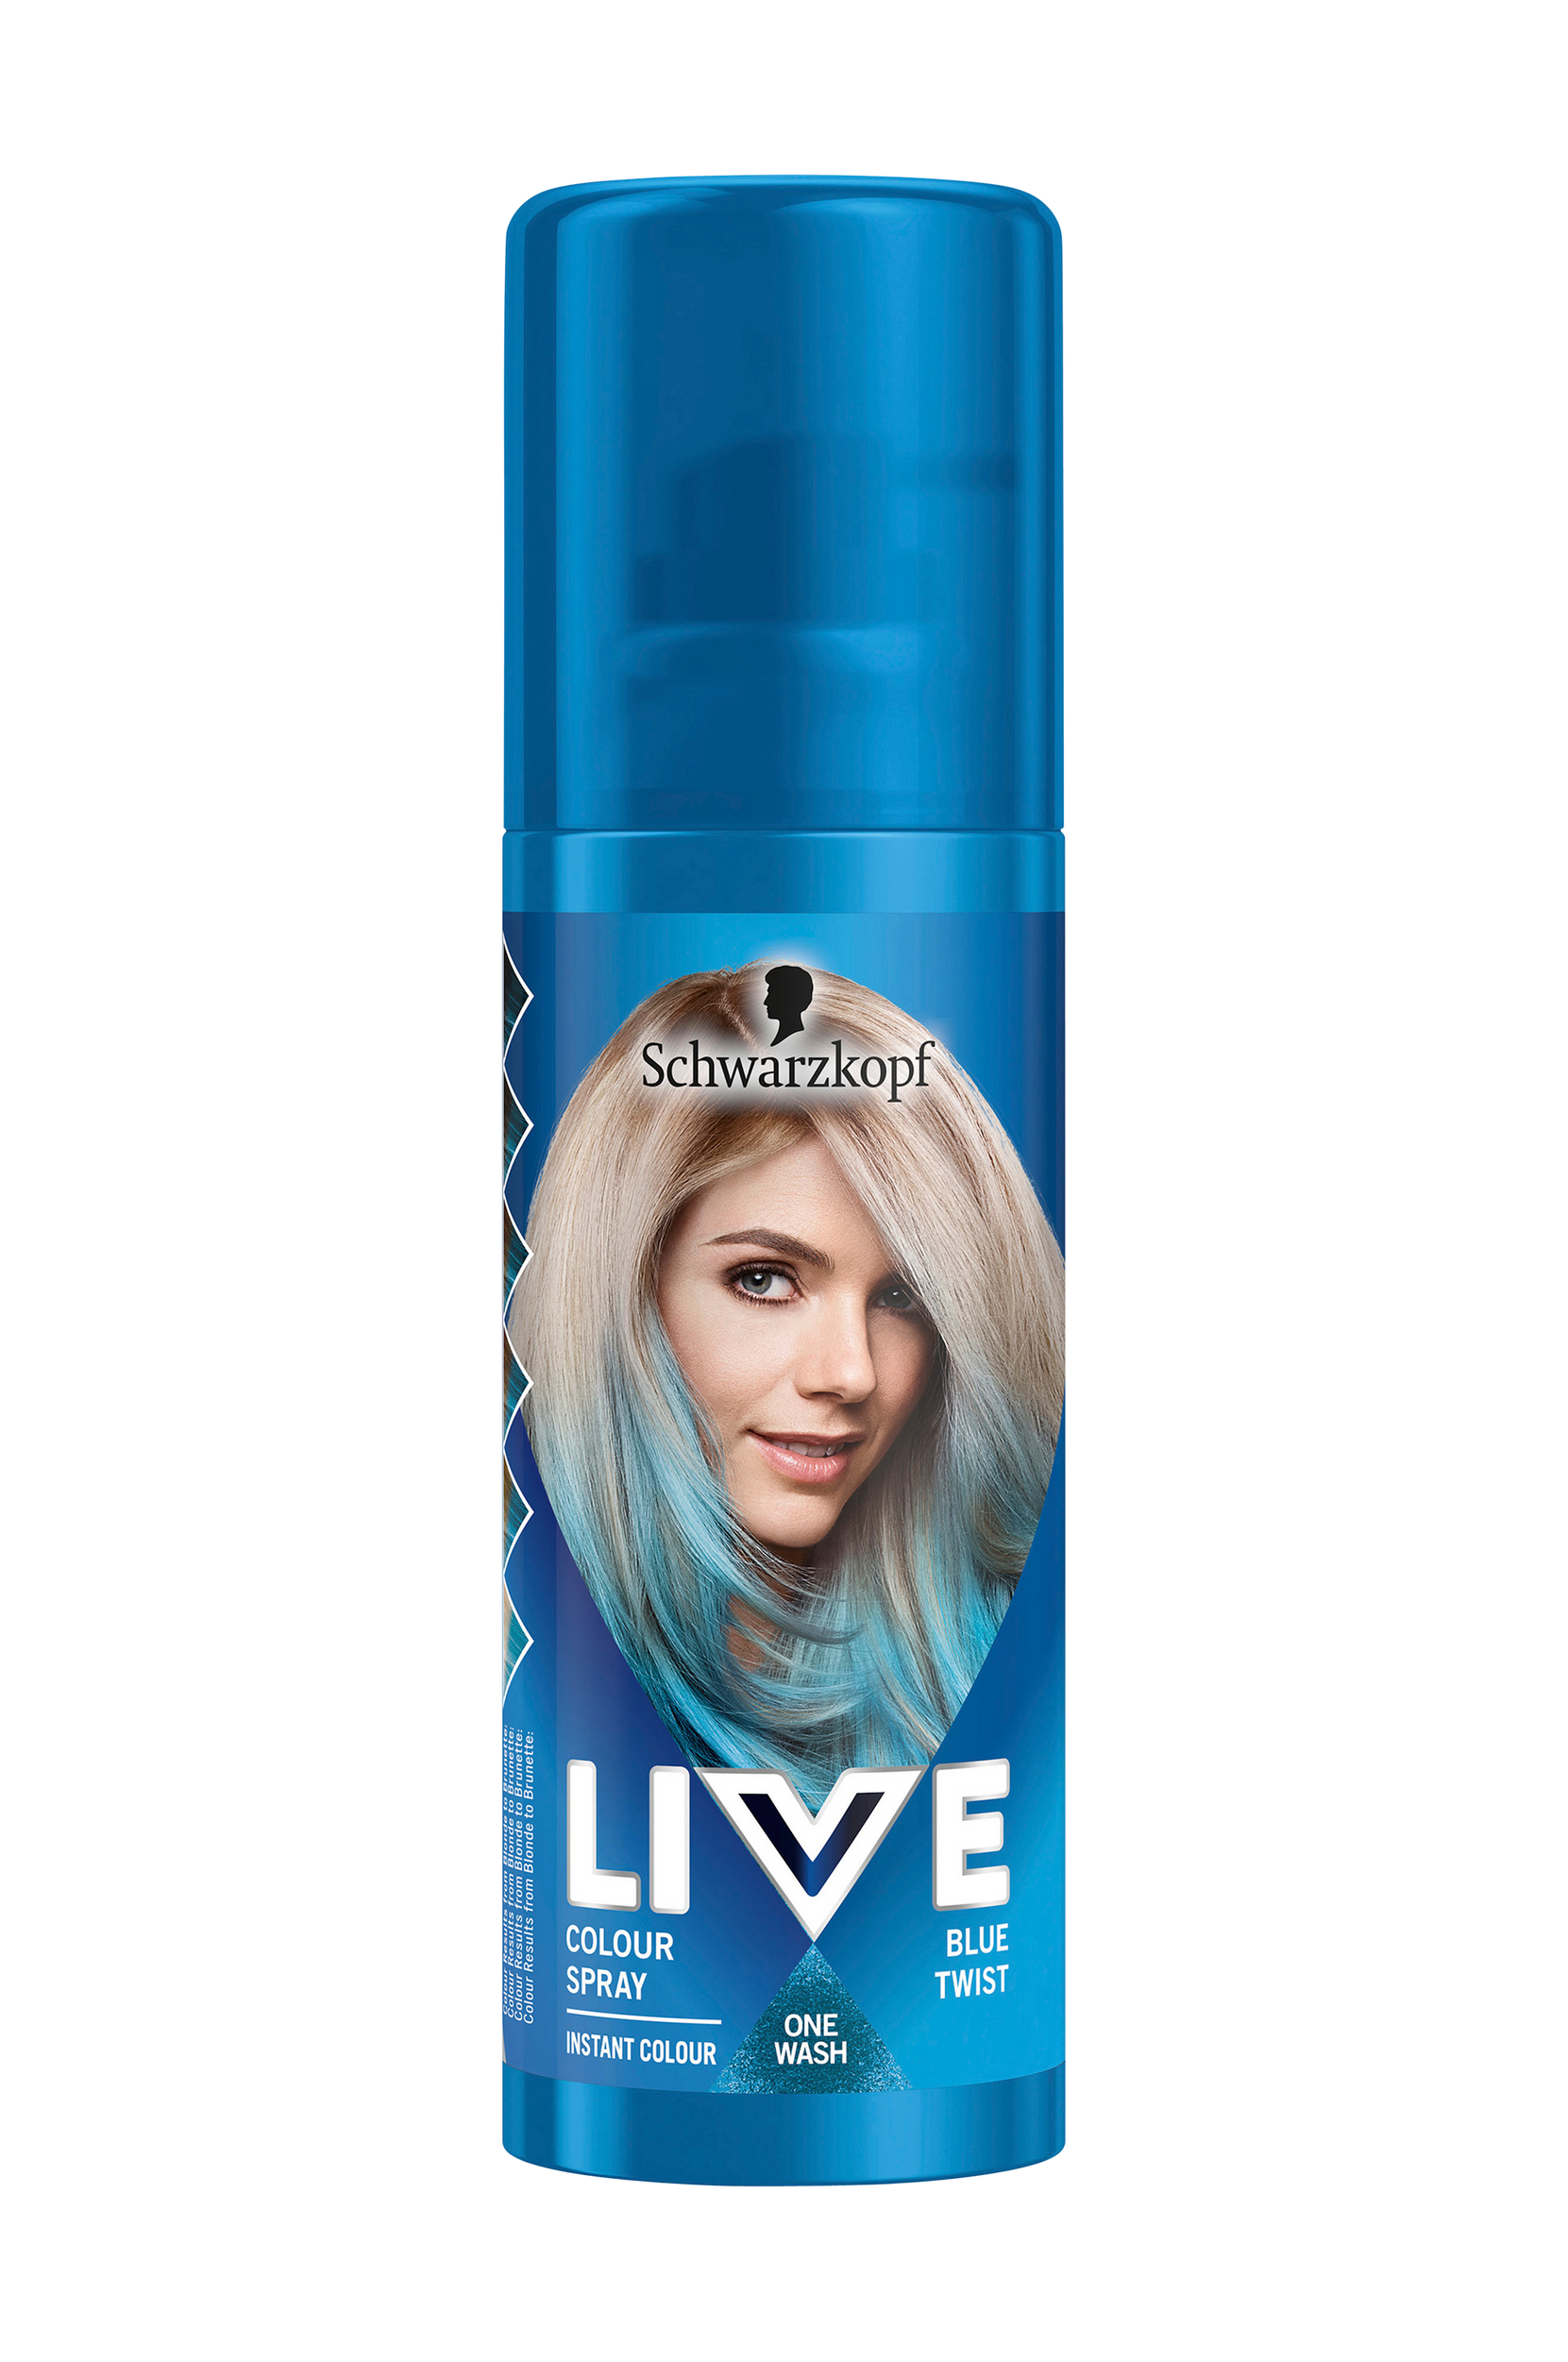 LIVE Color Spray 120 ml, Schwarzkopf